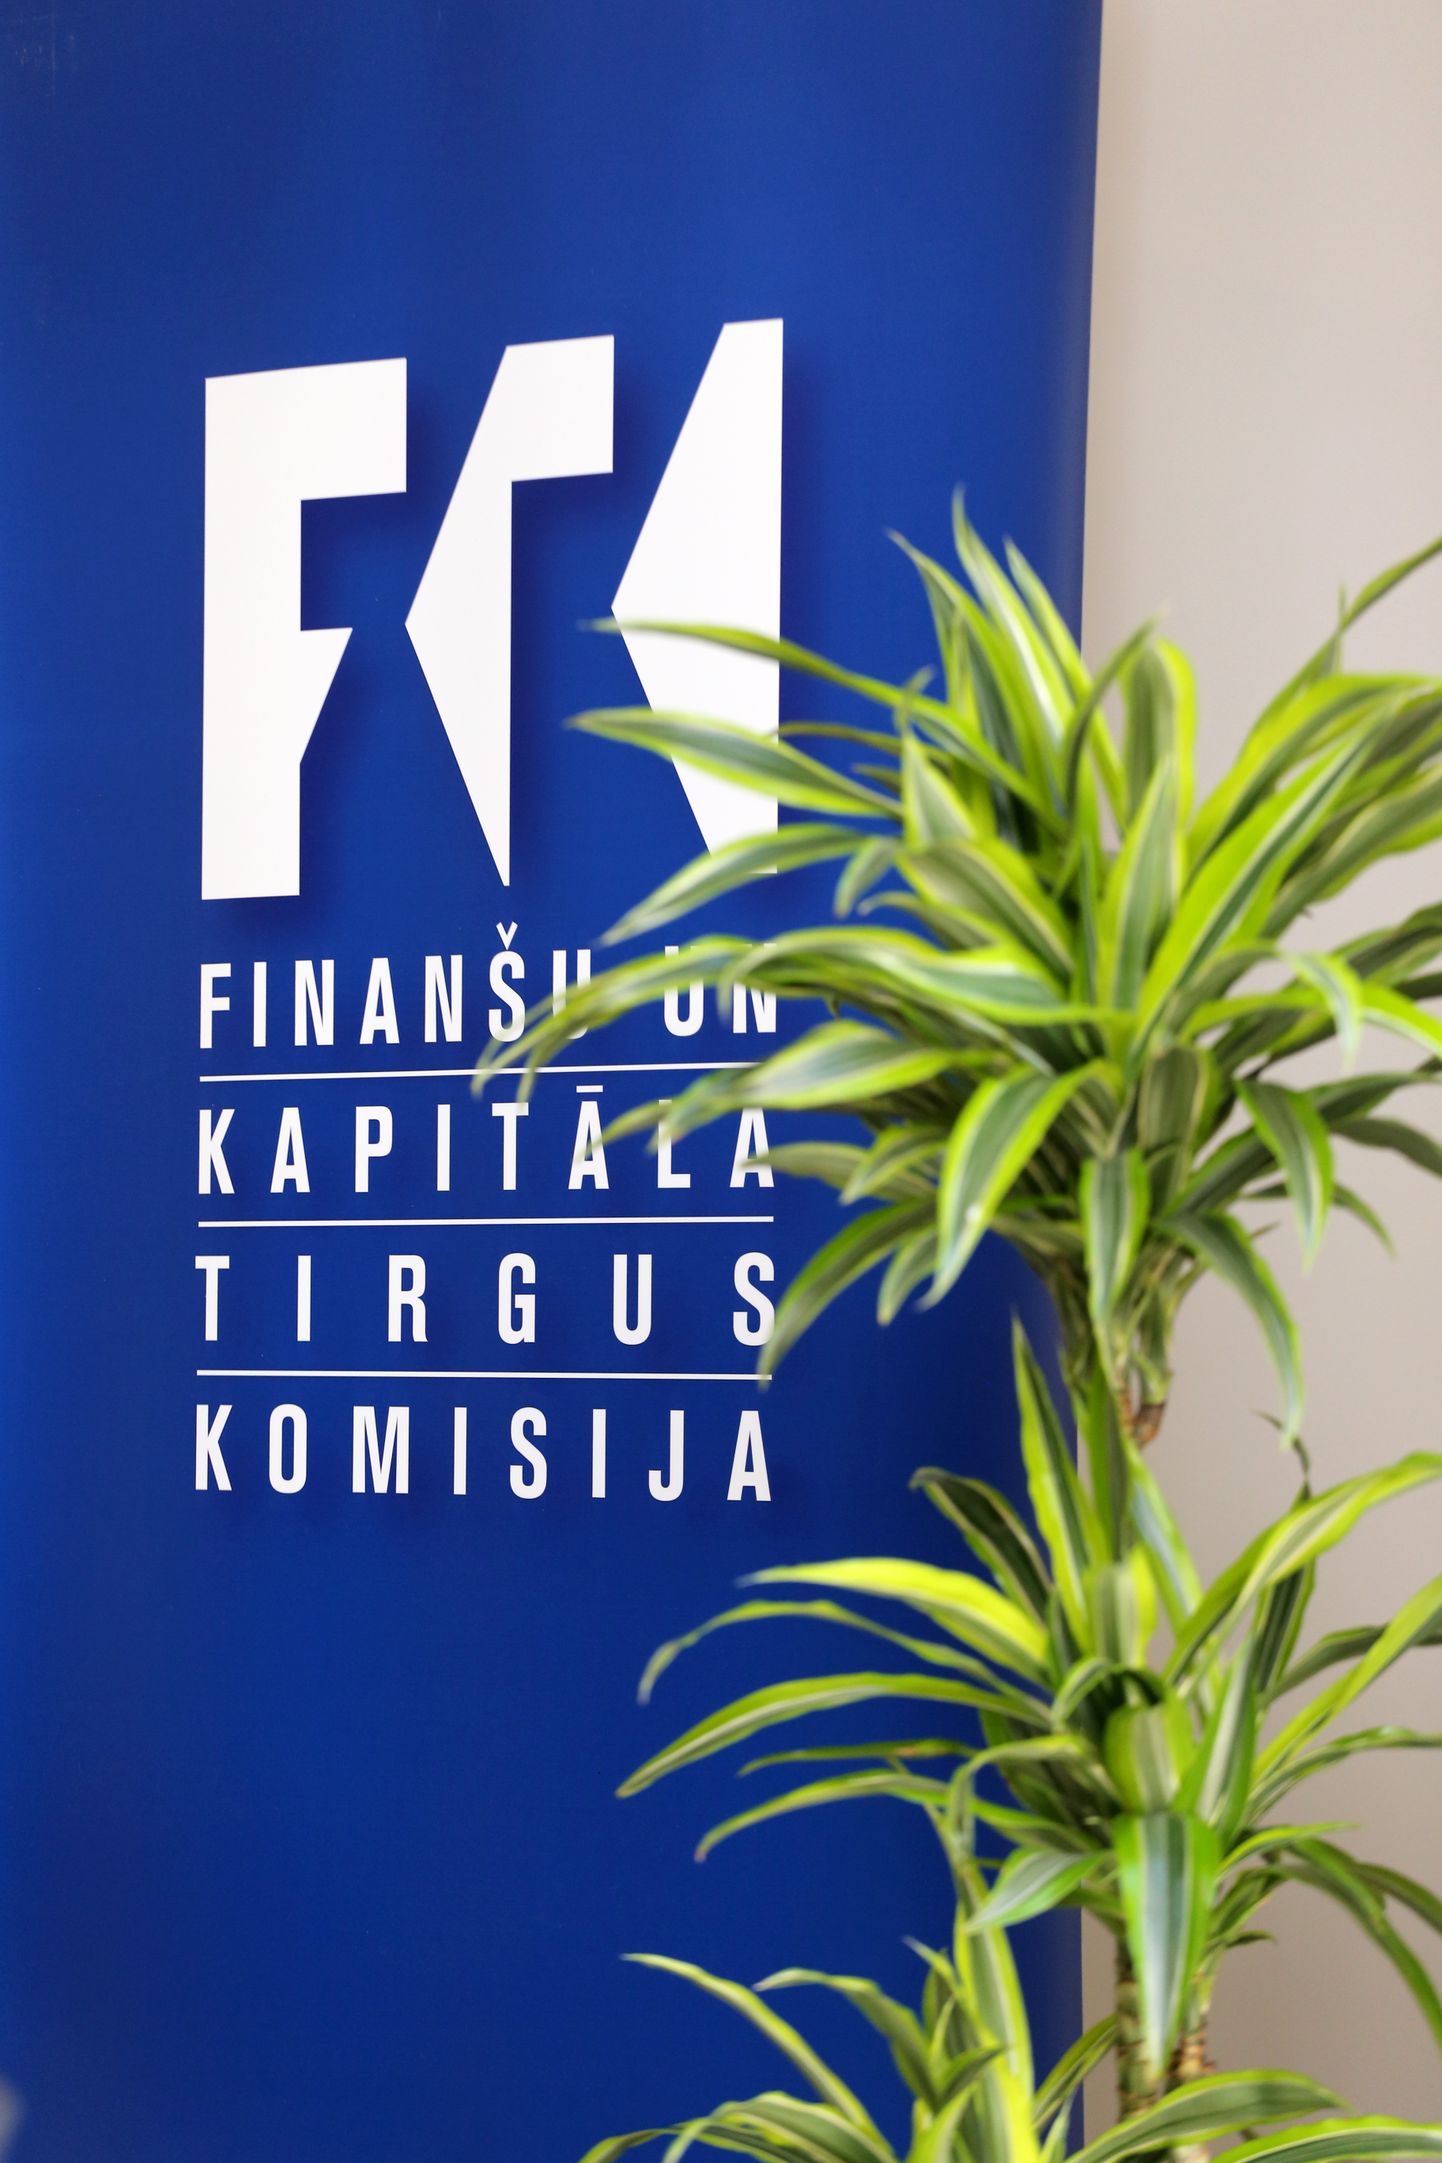 Finanšu un kapitāla tirgus komisijas logo. Ilustratīvs attēls.